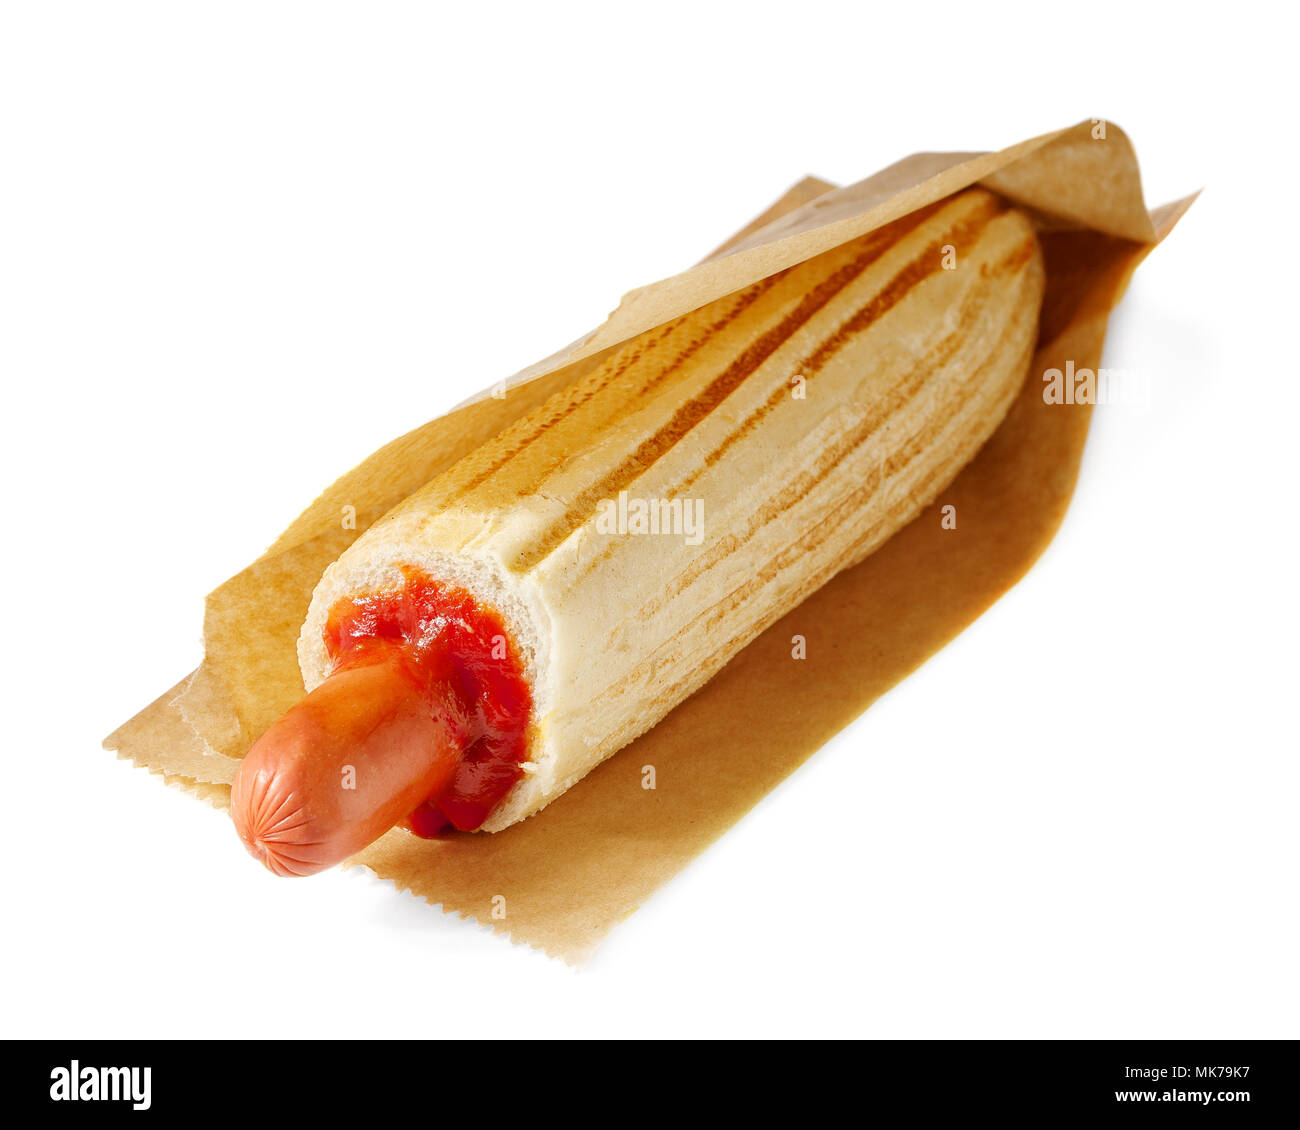 Francês Estilo Coreano França Milho Cachorro Gamja Hotdog Vestida No Prato.  Horizontal Foto de Stock - Imagem de gourmet, frite: 265033826